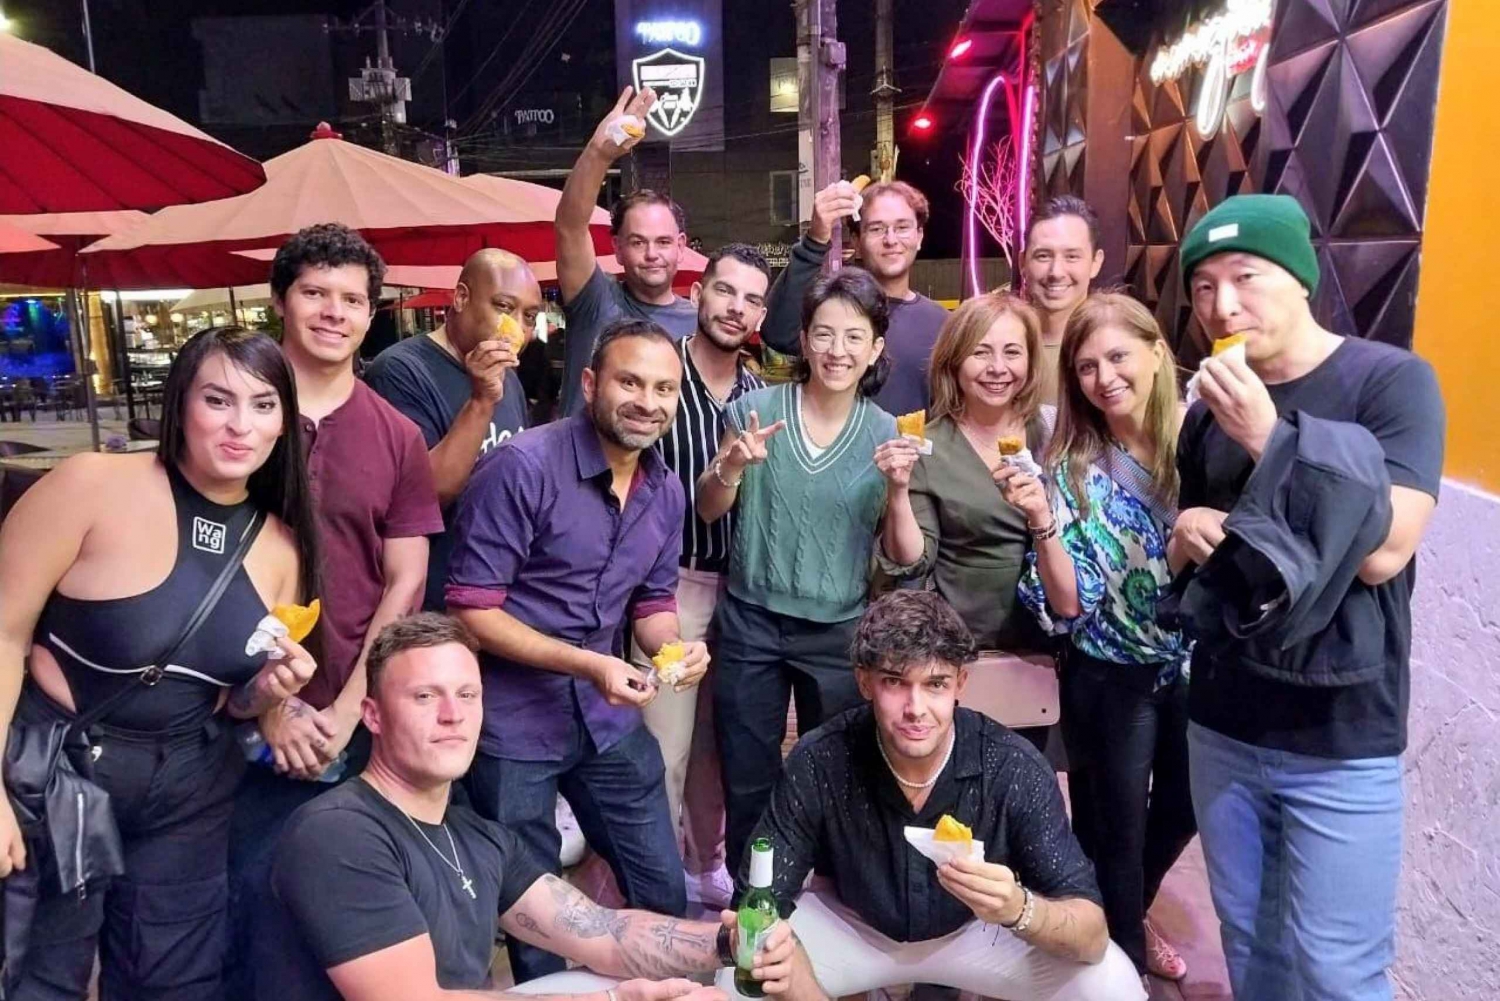 Medellín: Tour nocturno con bares y discotecas en las azoteas